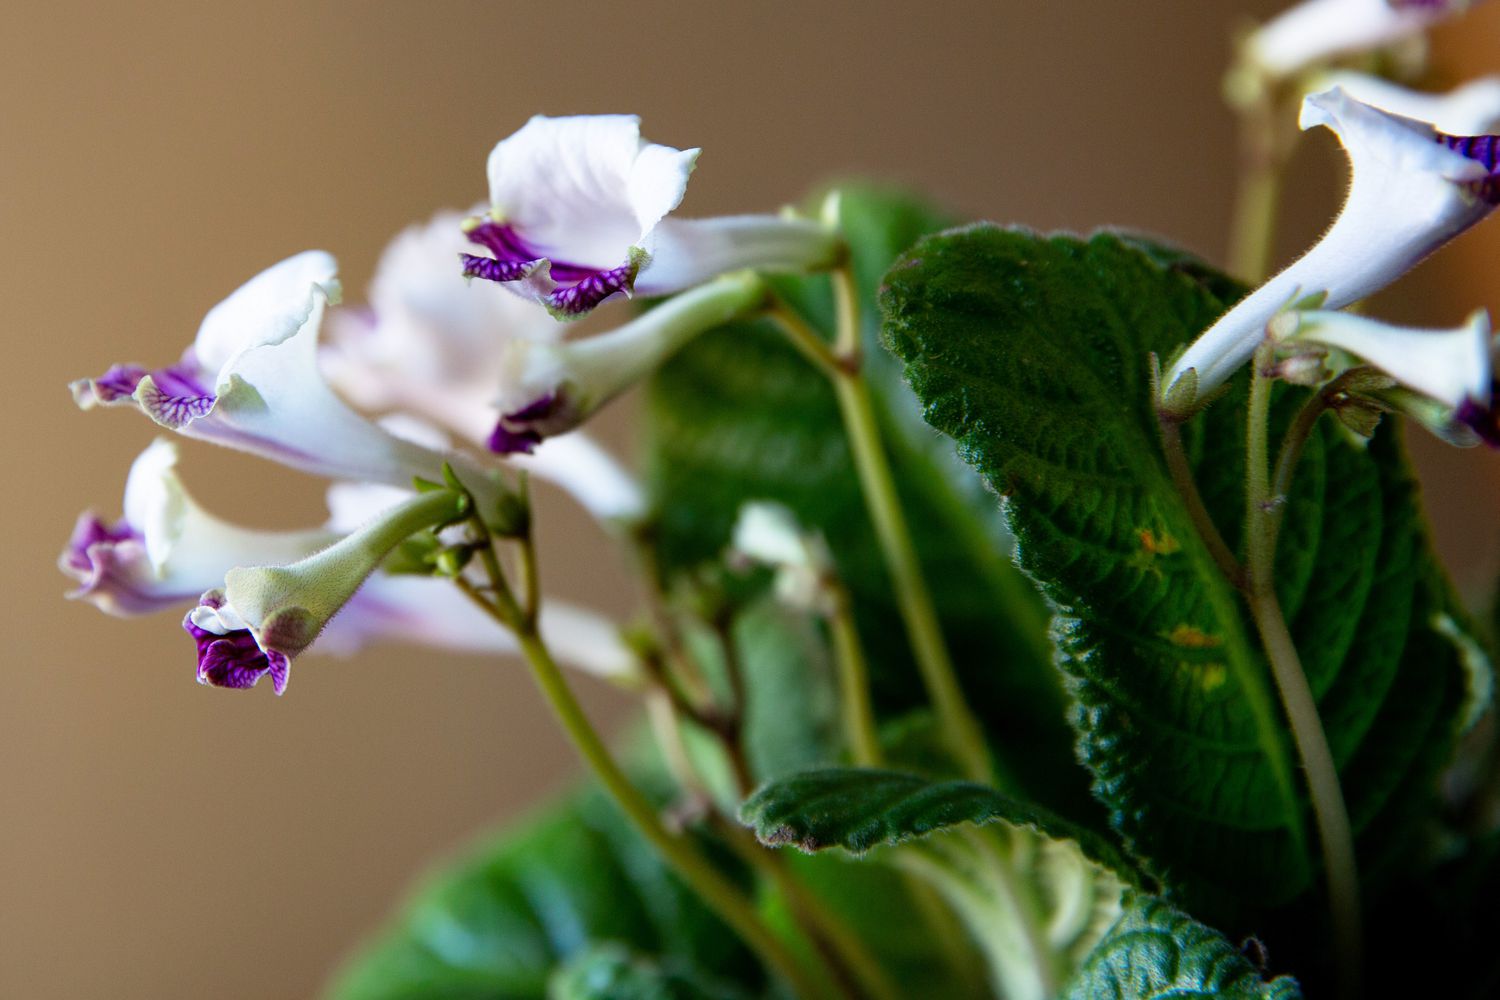 Streptocarpus-Pflanze mit weißen und violetten Blüten und Knospen mit Blättern in Nahaufnahme